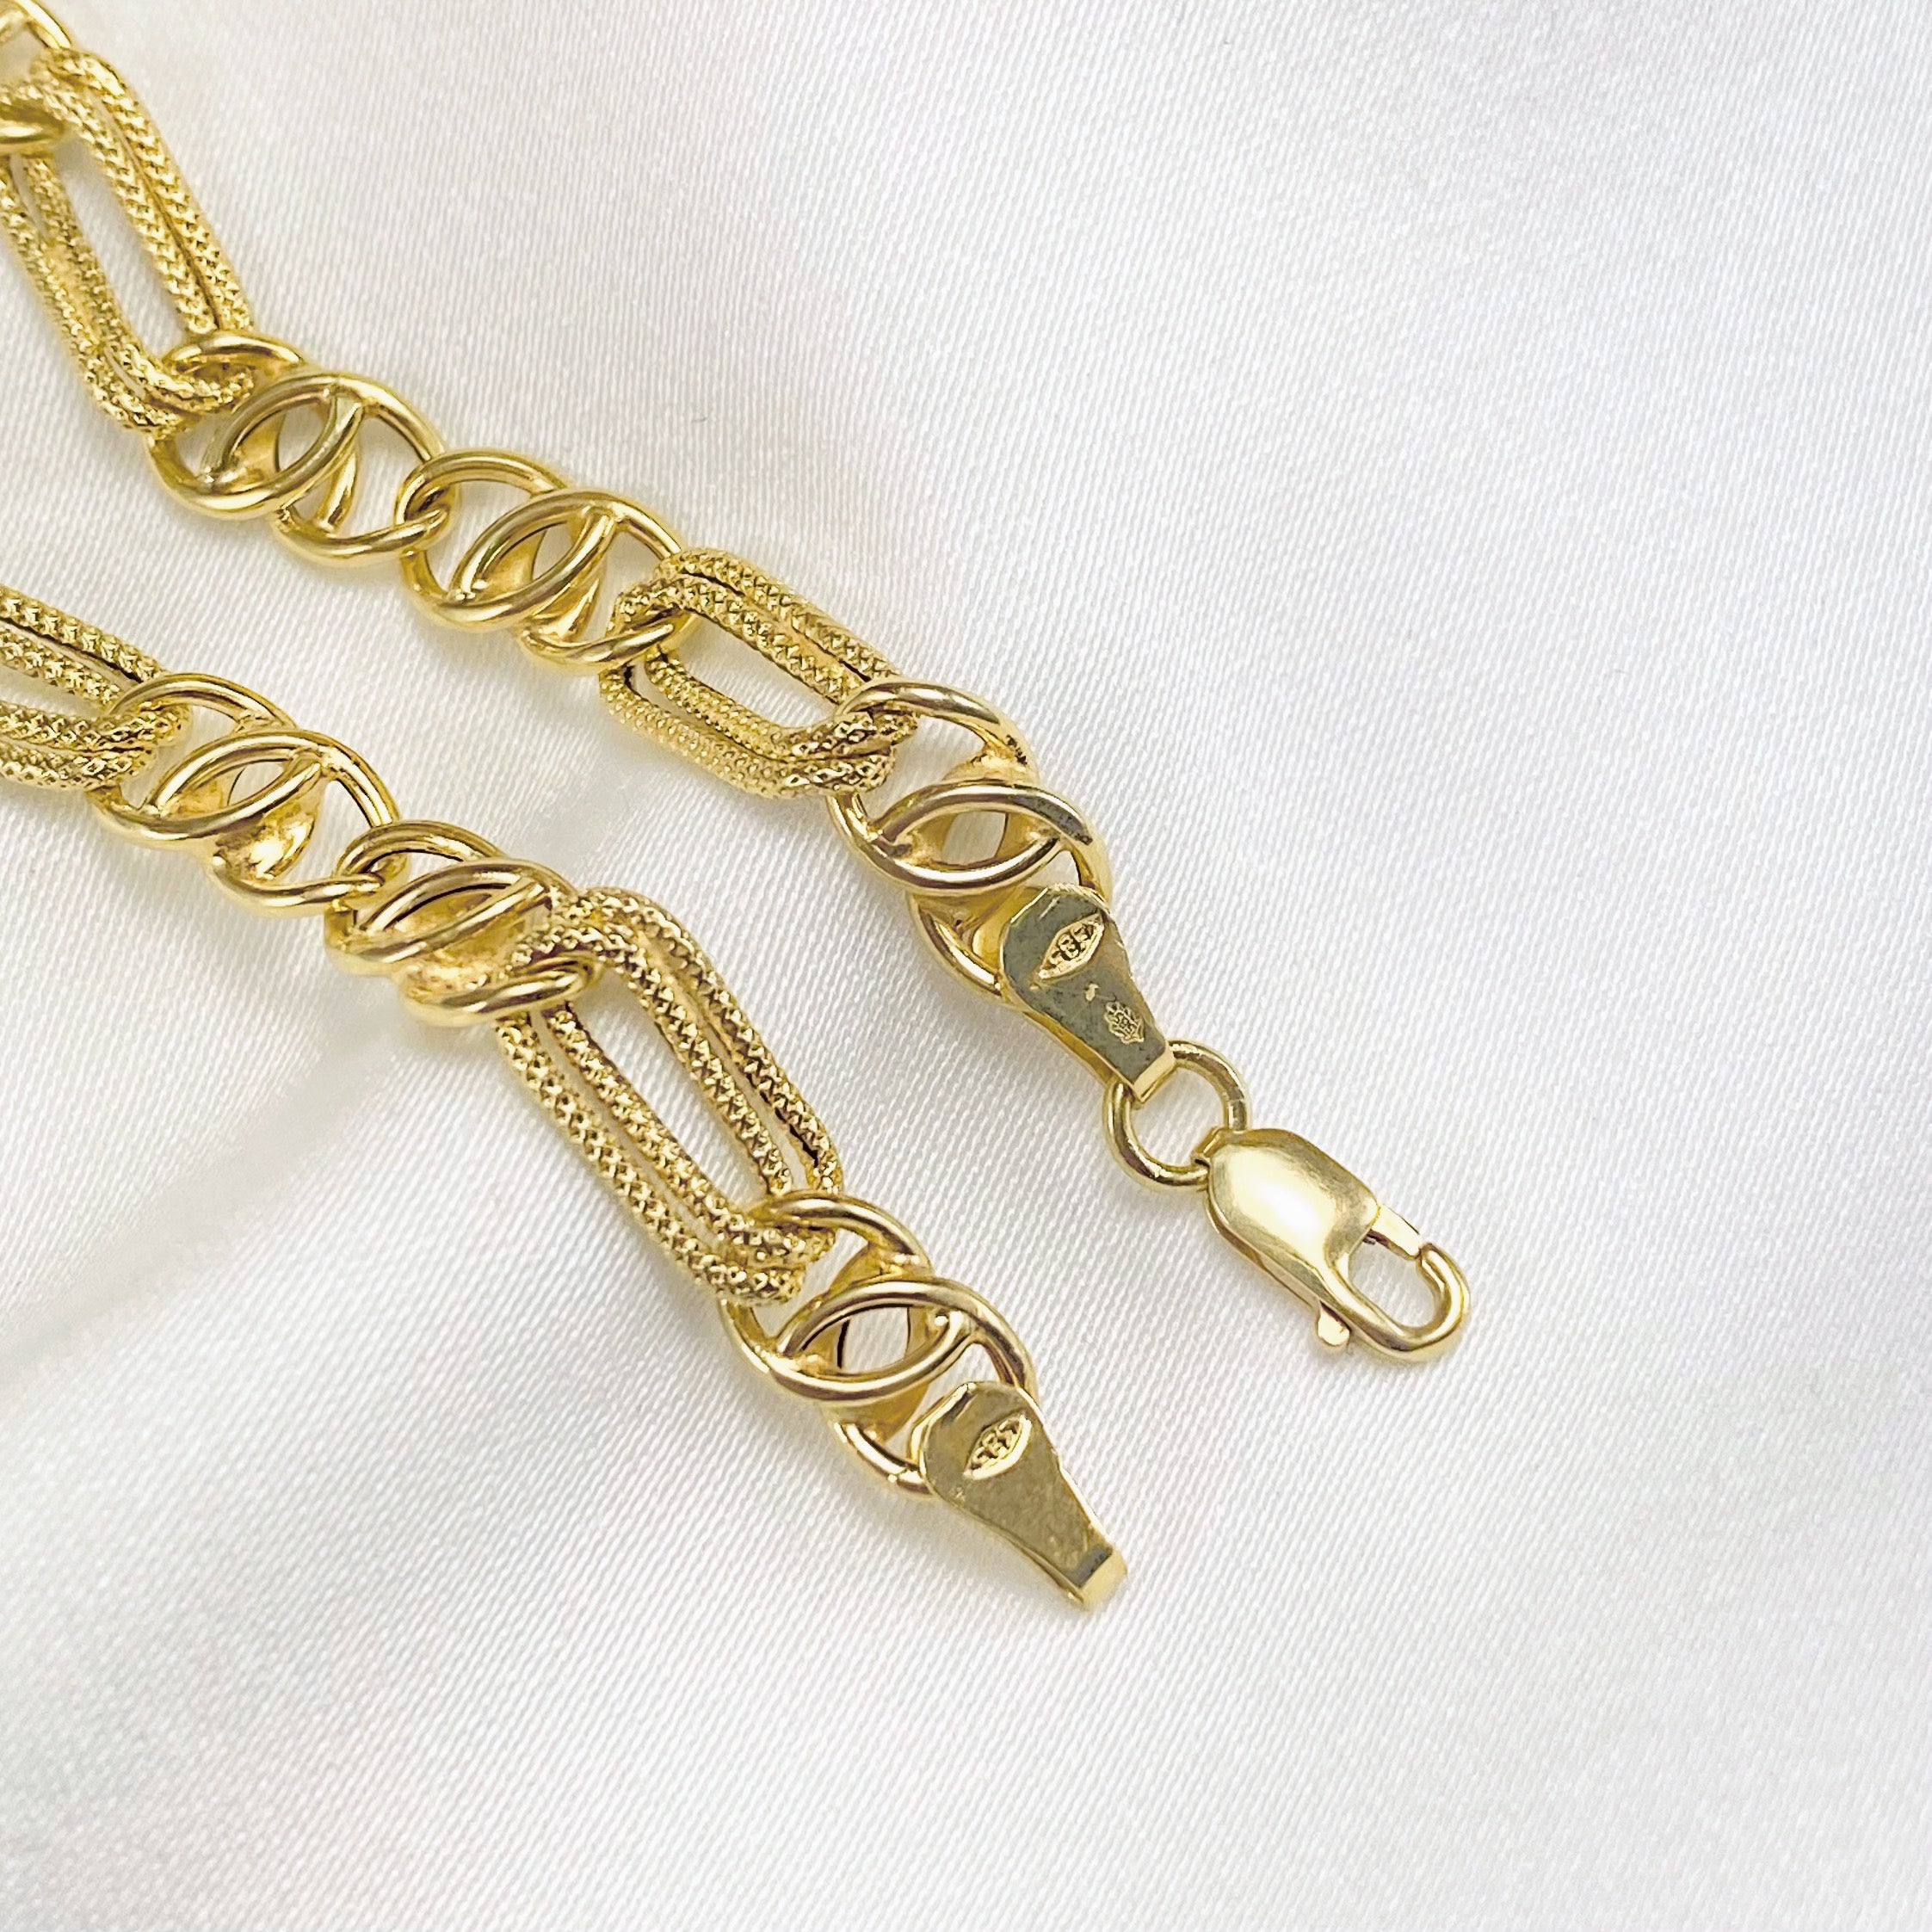 Unique vintage Chain Bracelet